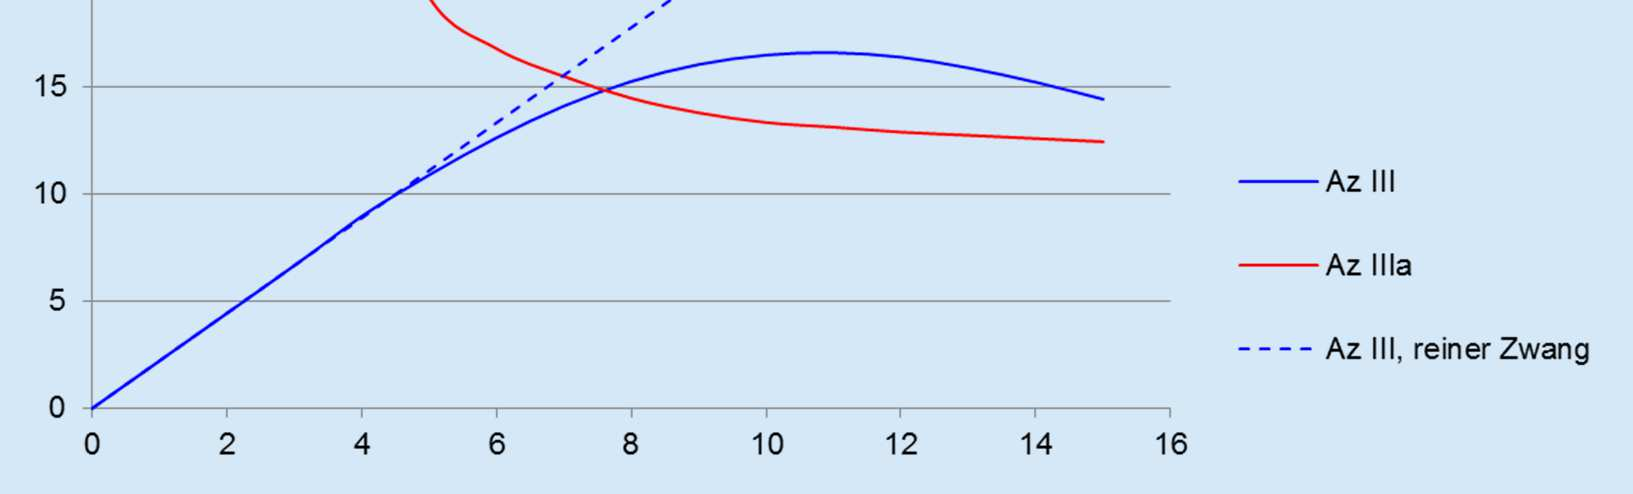 Tragverhalten eines Schlauchliners bei Az. IIIa; Parameteruntersuchung am Beispiel eines GfK-Liners unzulässiger Bereich, da gem.